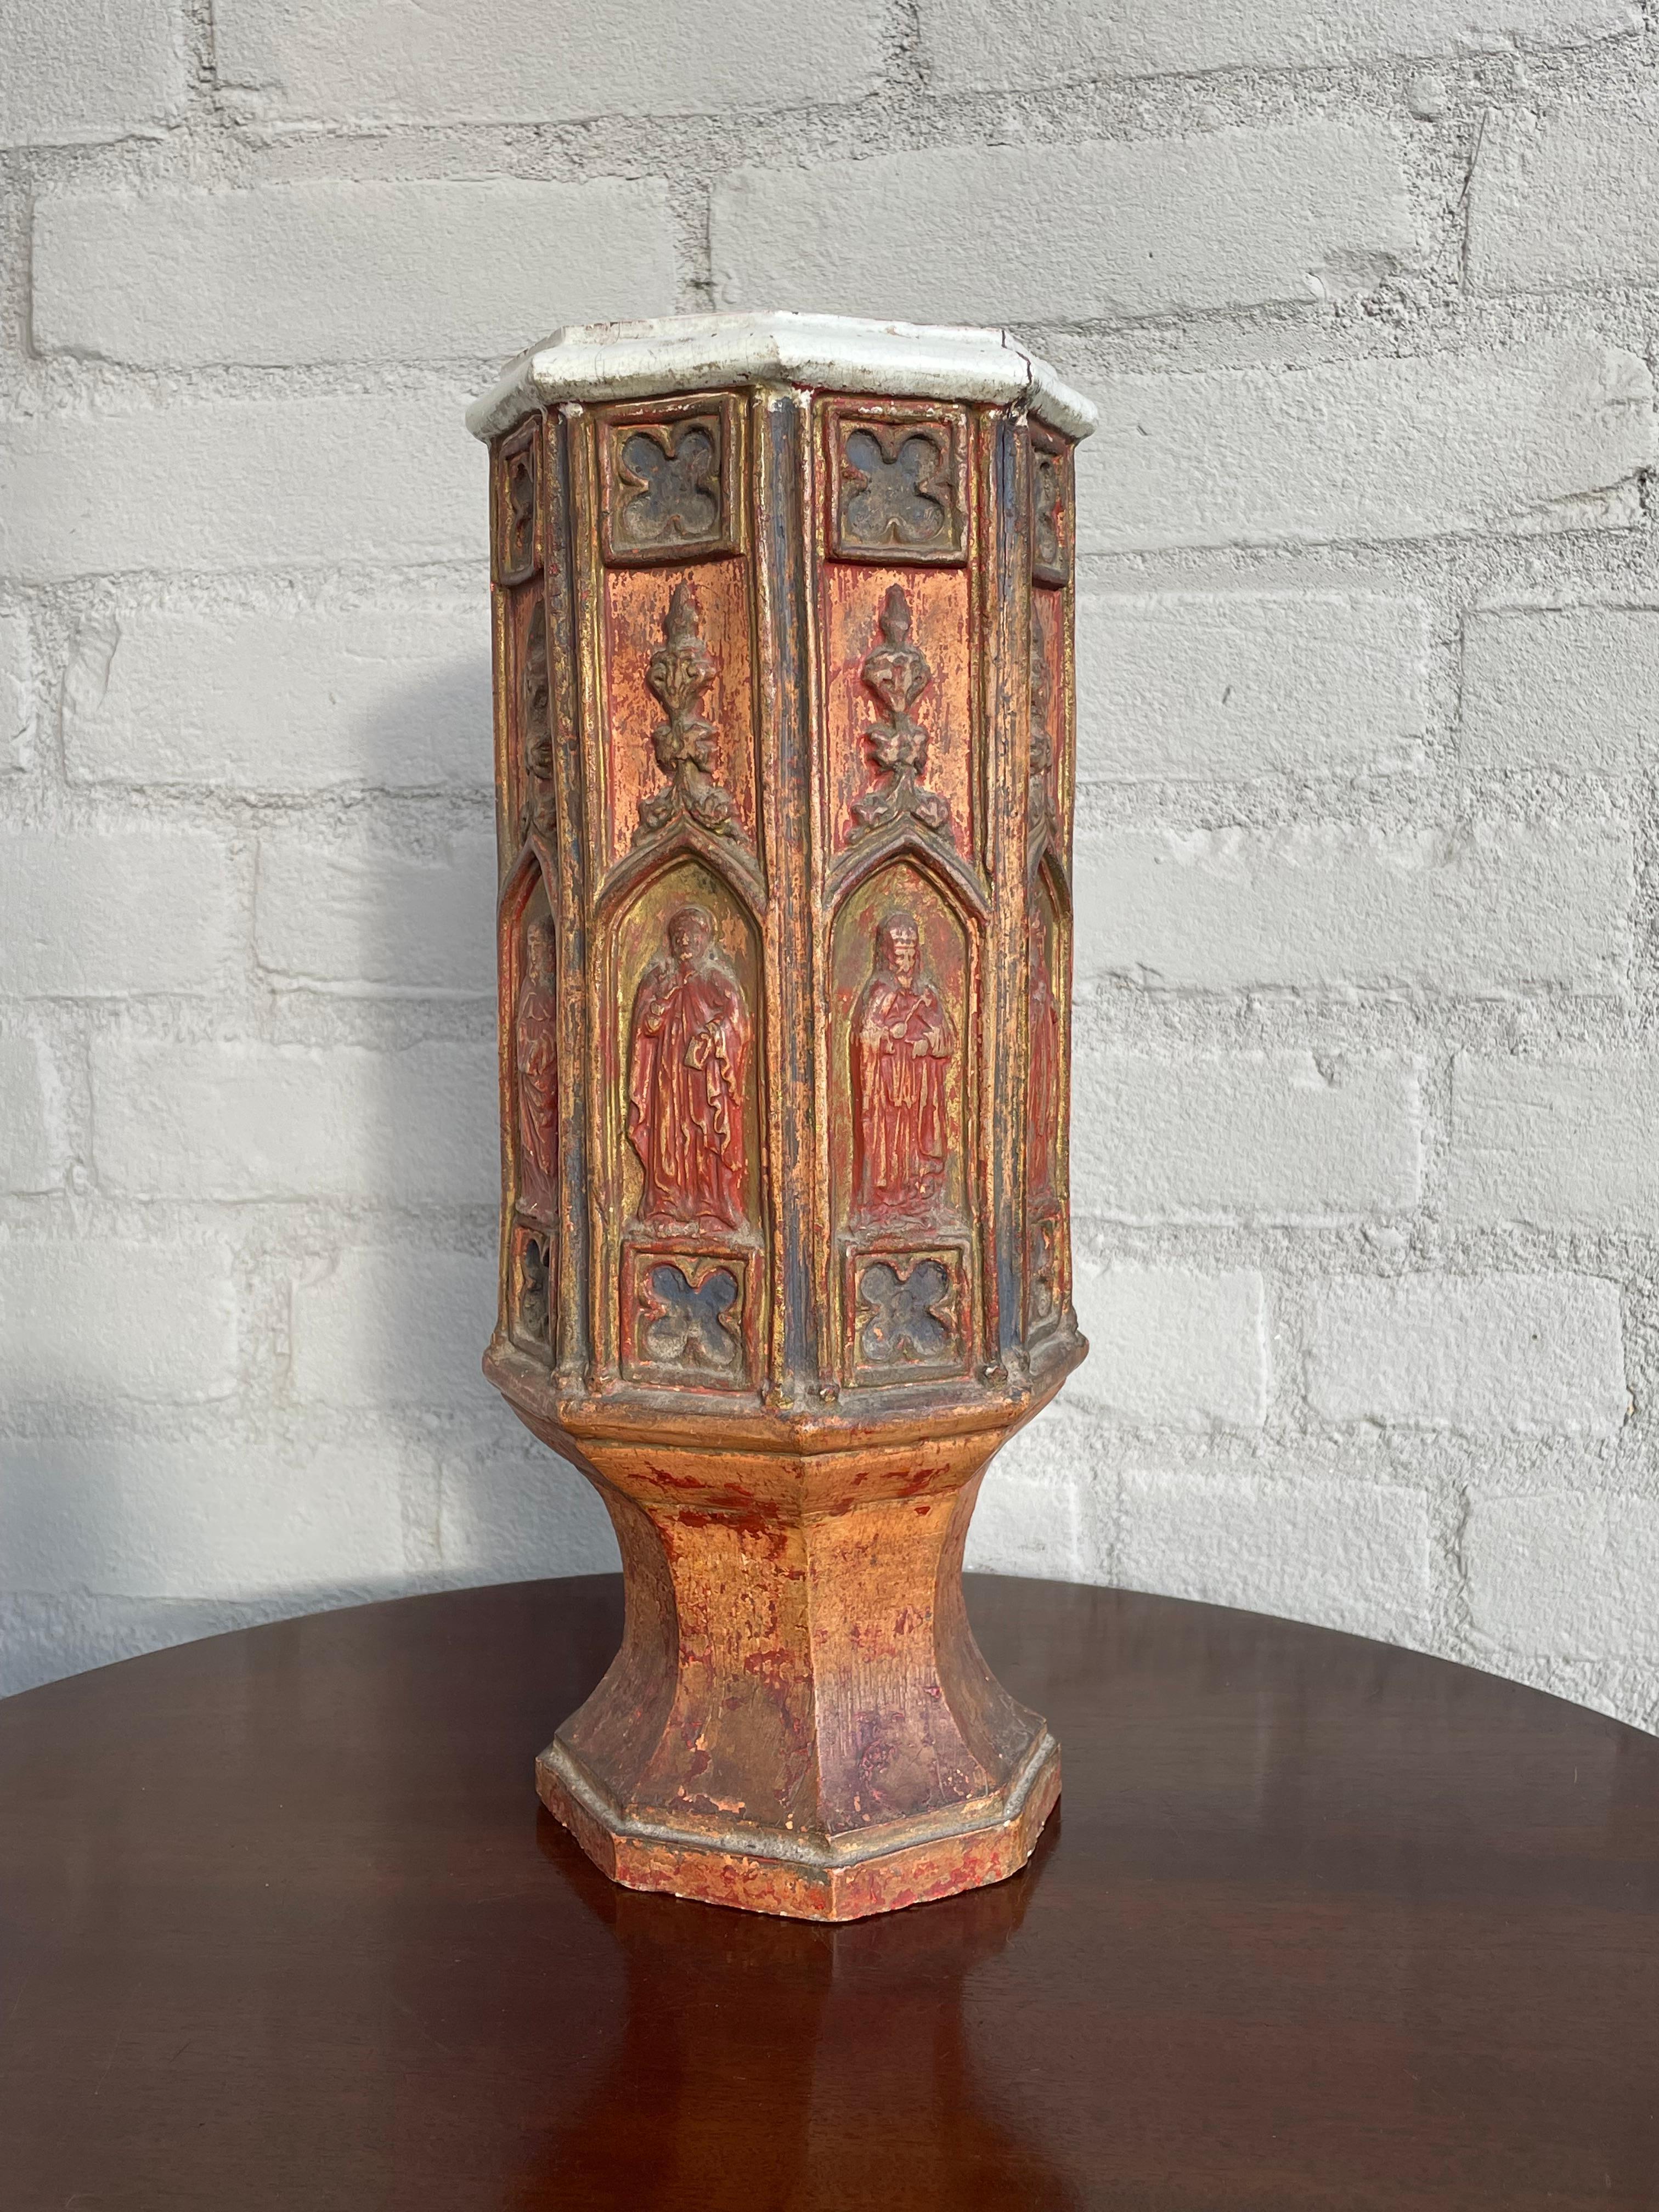 Erstaunliche Verarbeitung und wirklich alt aussehende, mittelalterliche Stil antike Vase Sanctuary.

Diese großartig aussehende und komplett handgefertigte Vase im Gothic-Revival-Stil ist die erste ihrer Art, die wir je gesehen haben. Da wir